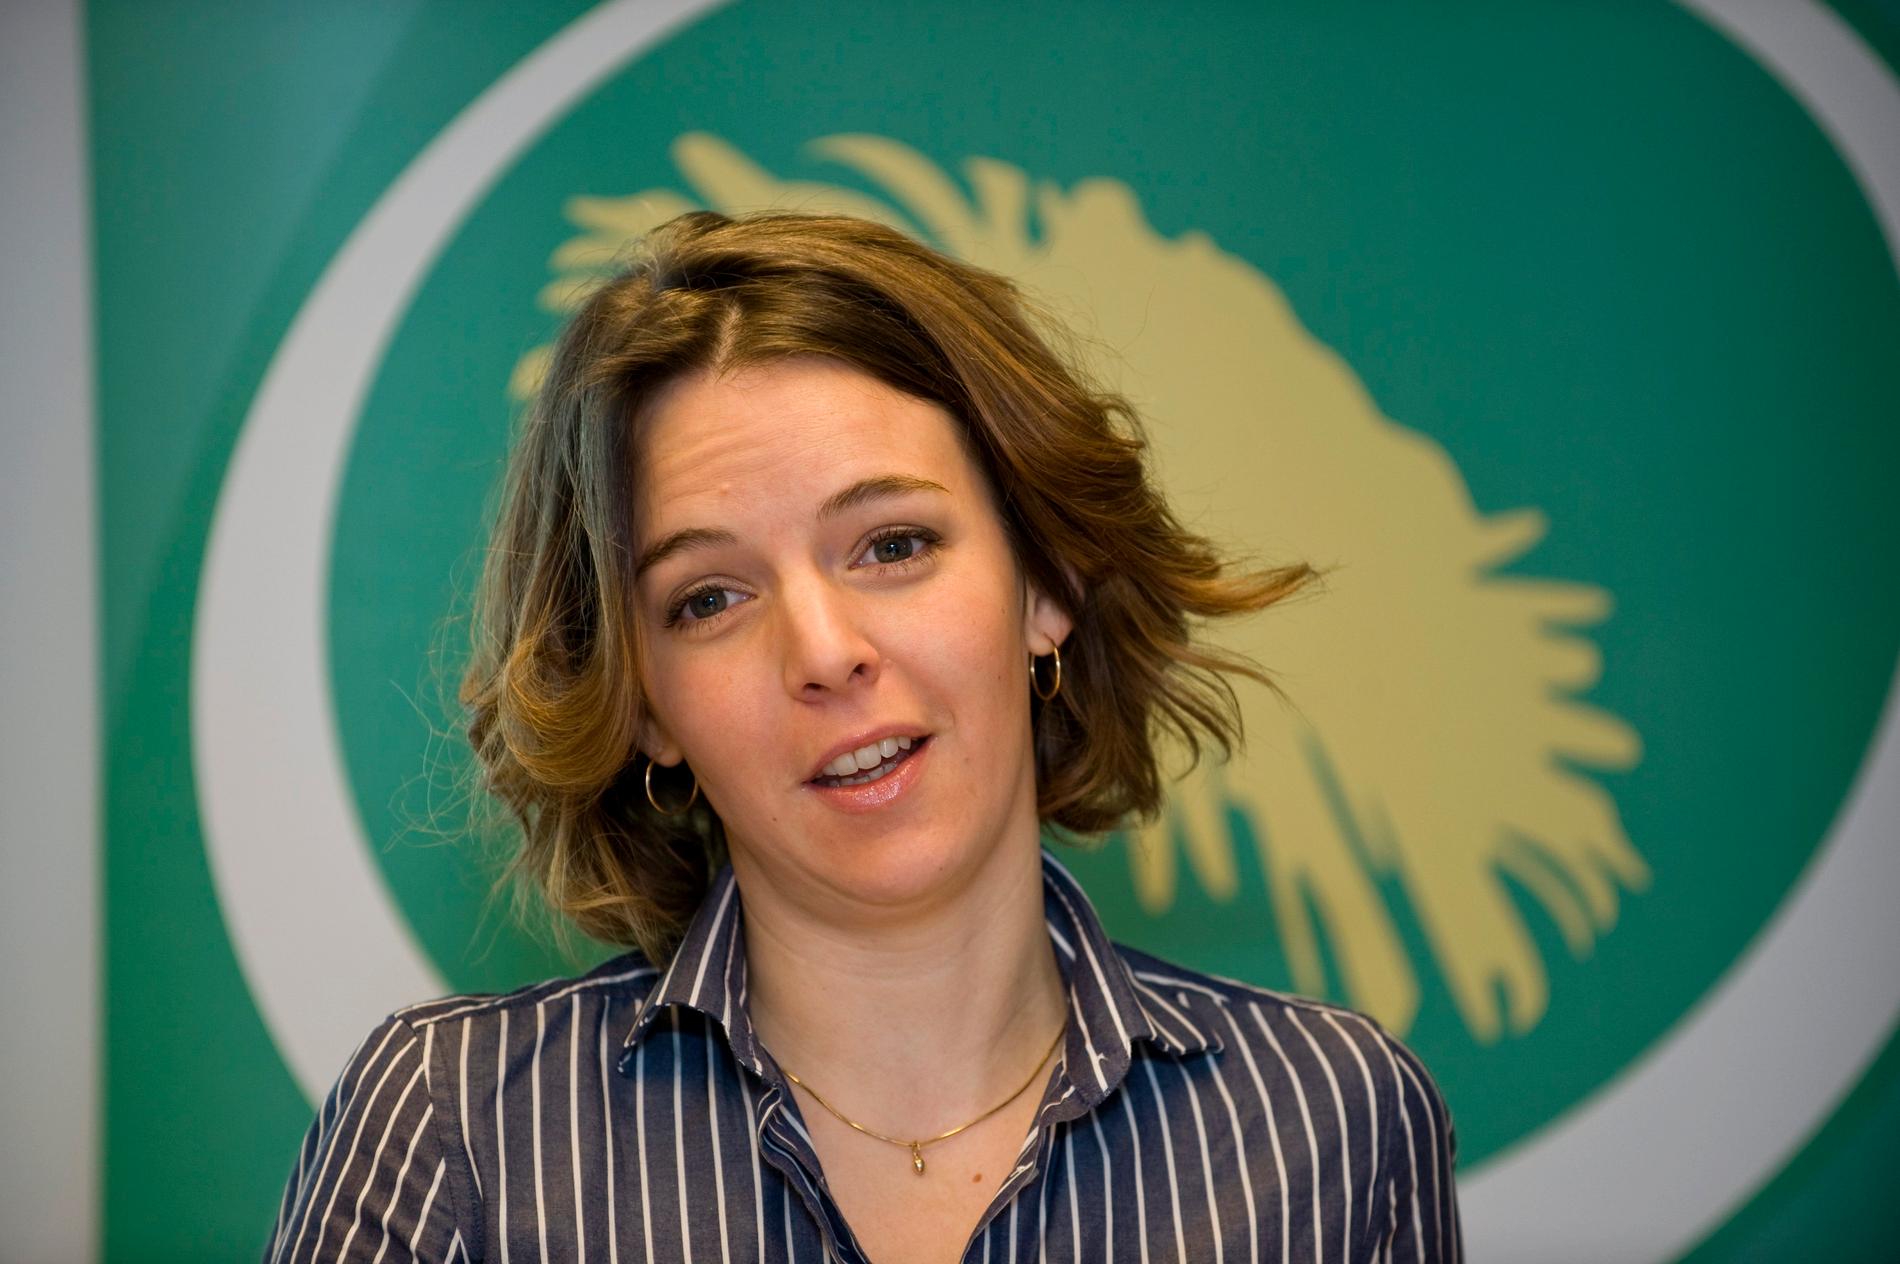 Den svenska FN-experten Zaida Catalán mördades i Kongo-Kinshasa i mars 2017. Bilden är tagen i samband med hennes engagemang i Miljöpartiet. Arkivbild.